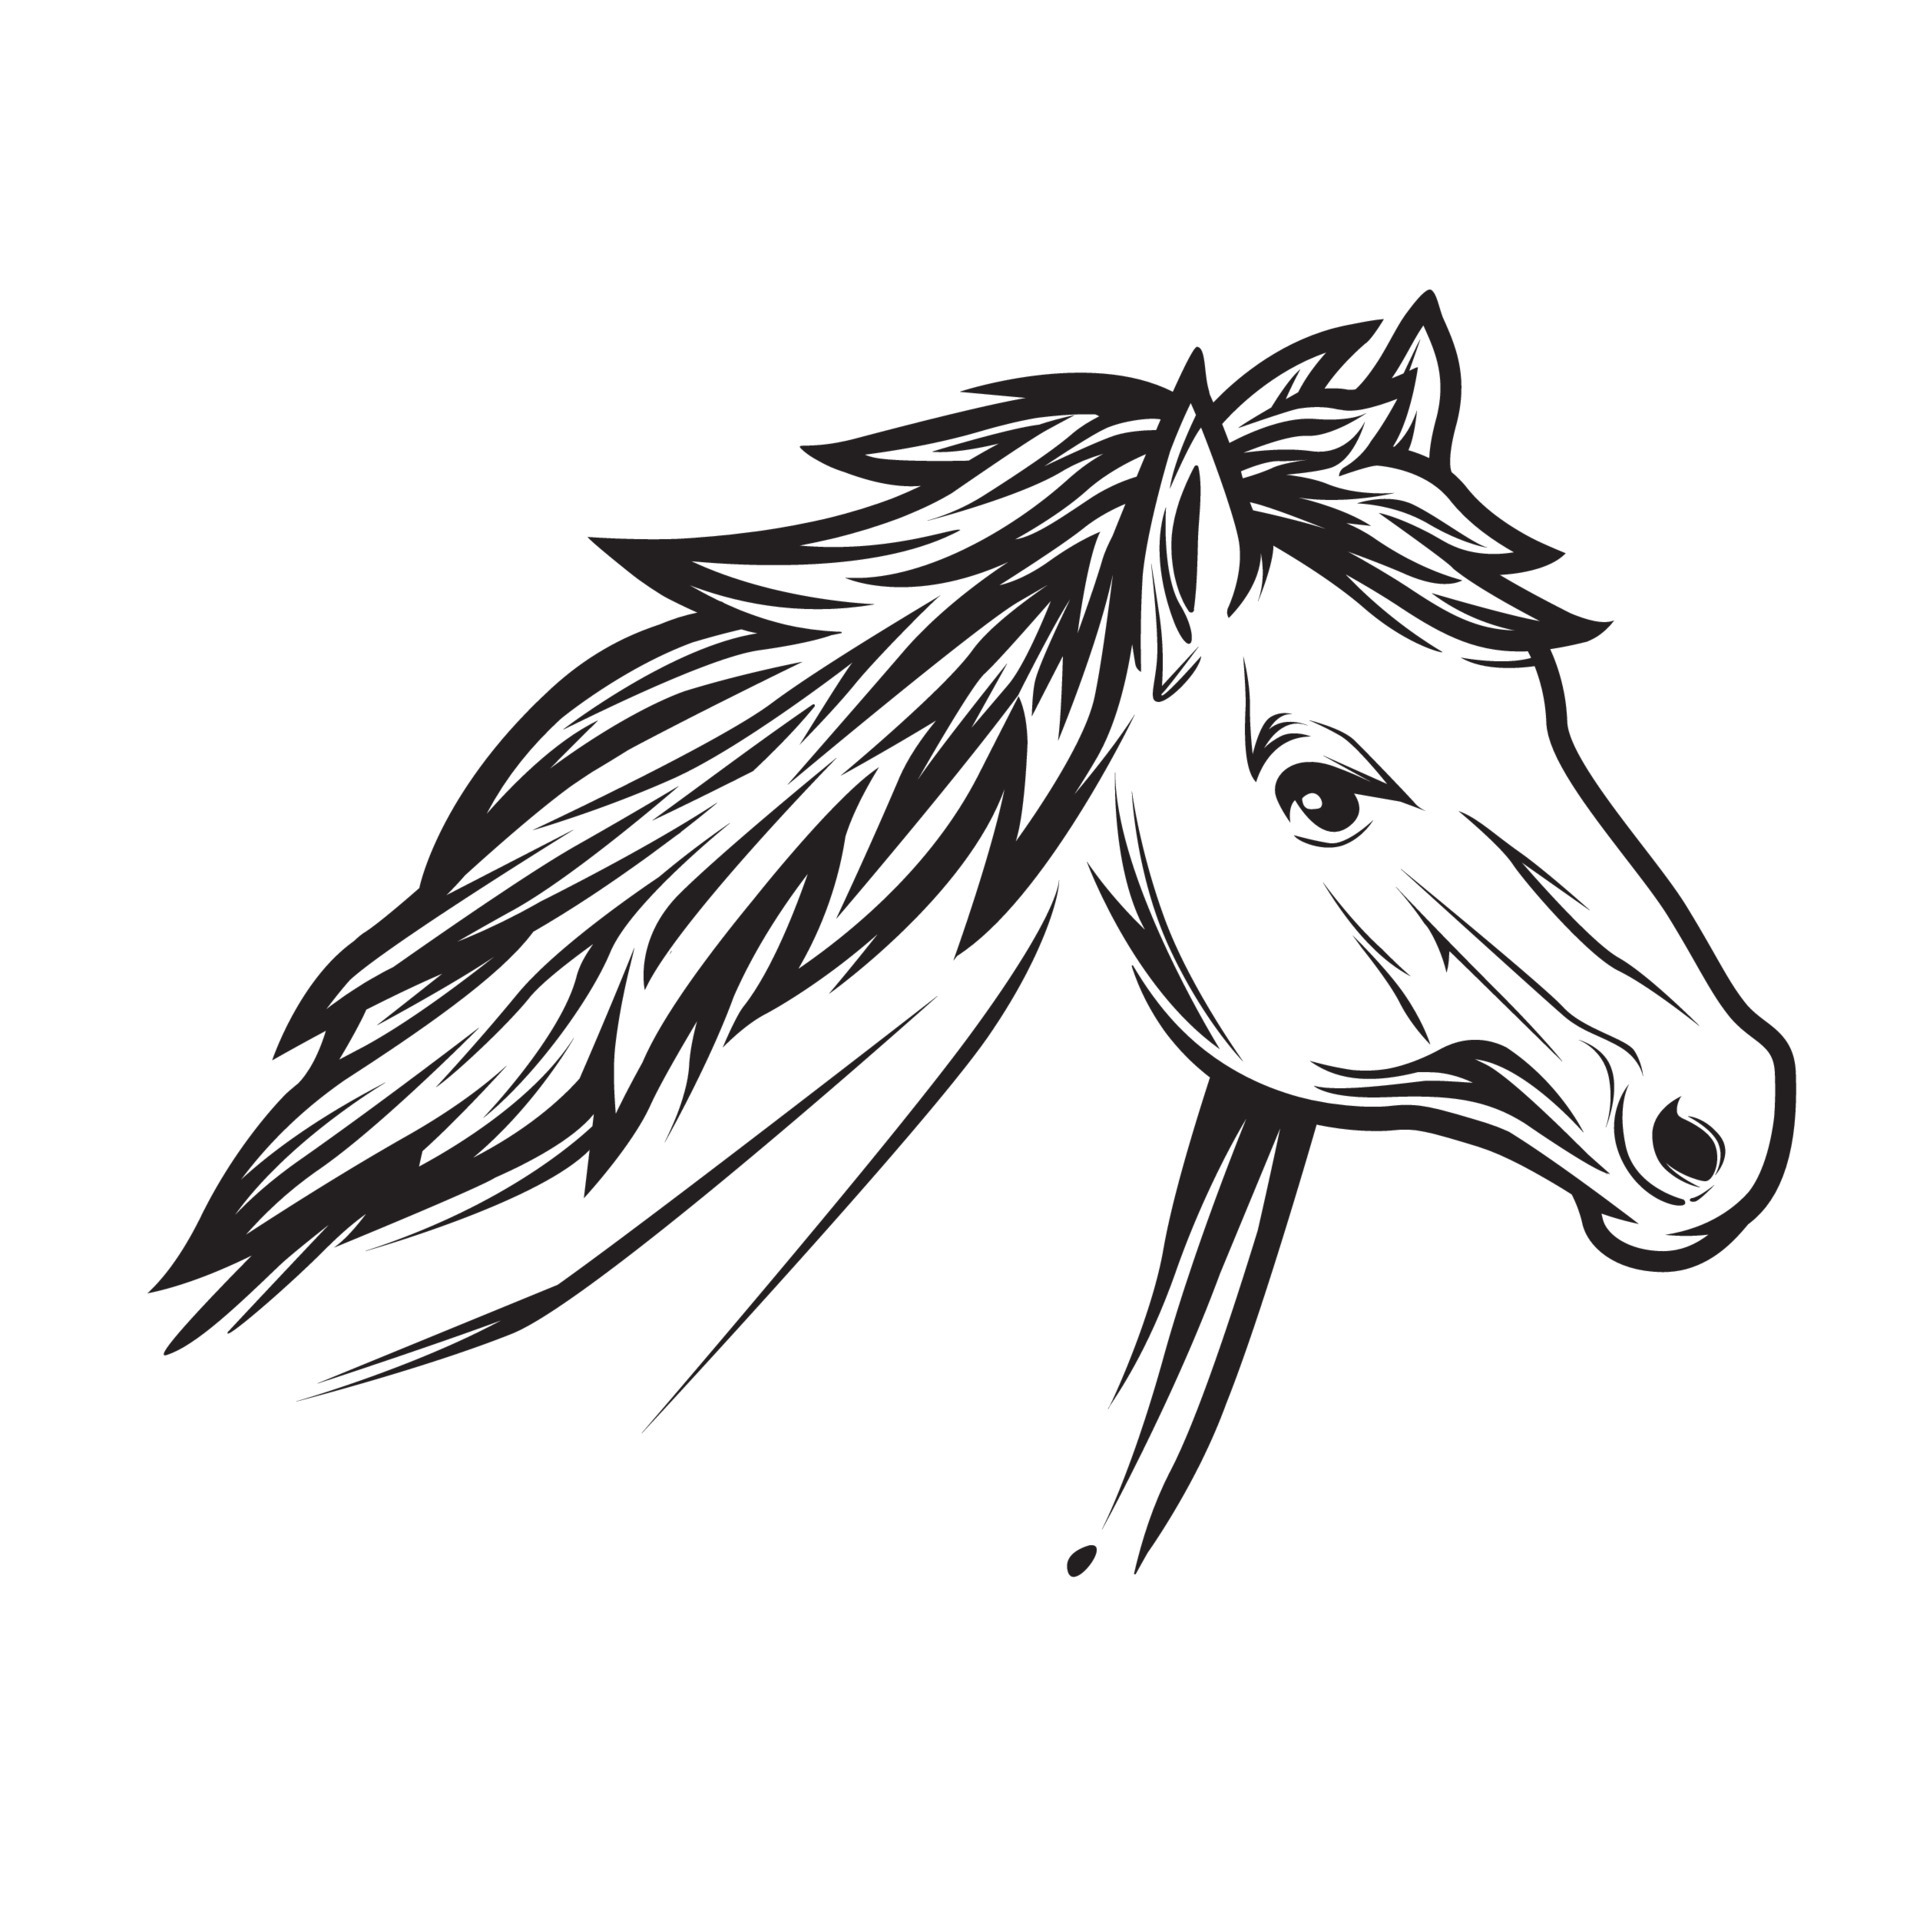 Урок второй. Рисуем голову лошади | Лошадиные картины, Лошади, Эскизы животных